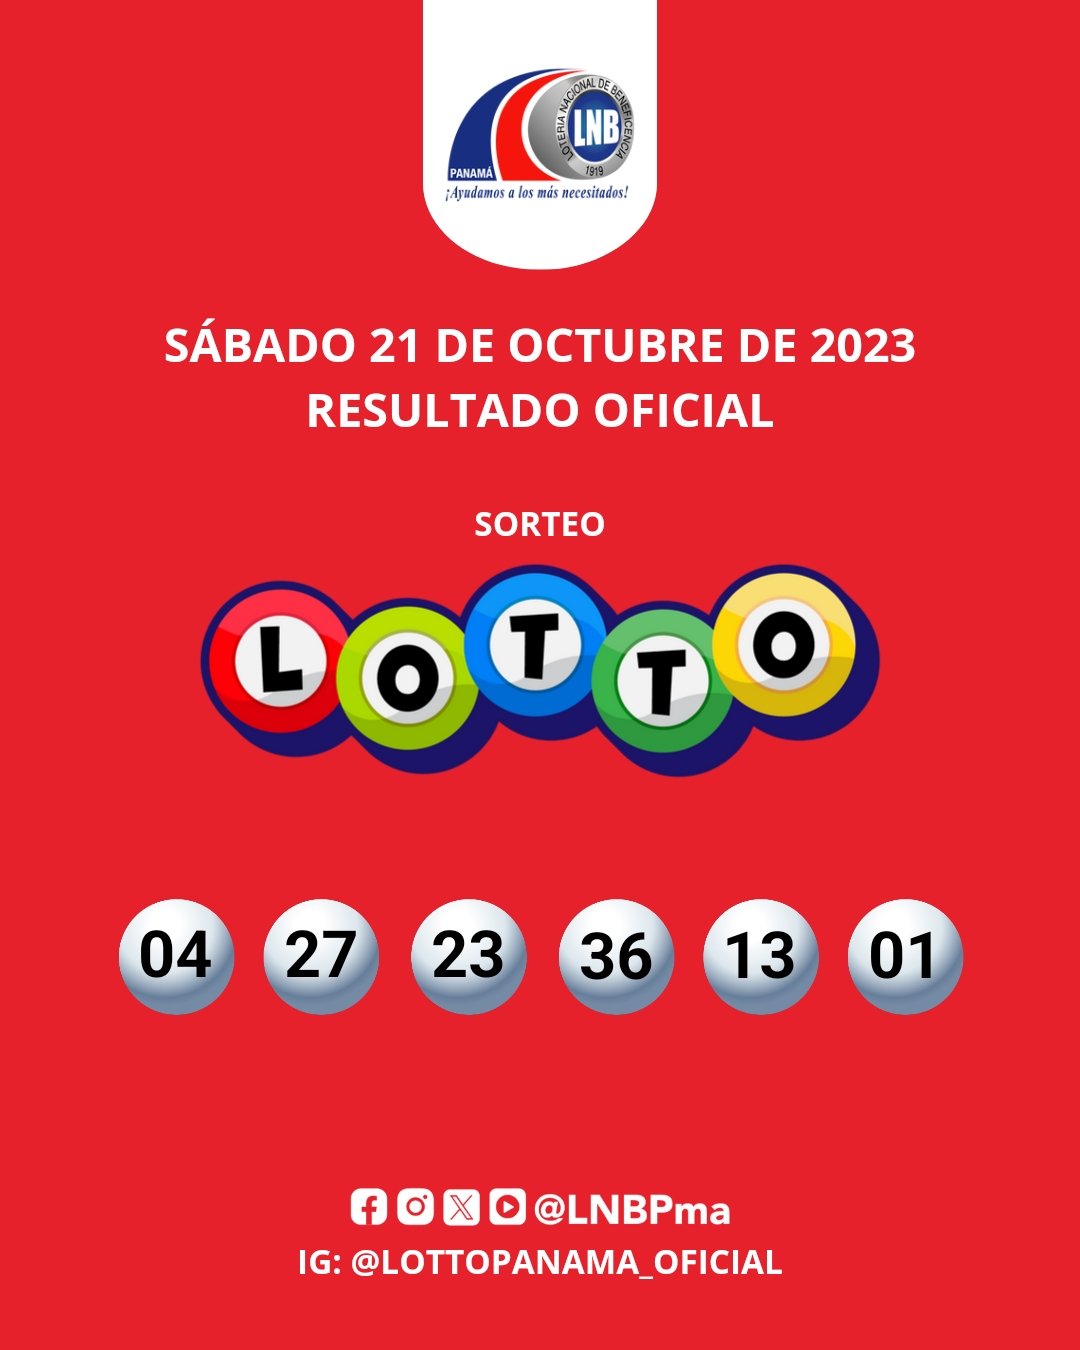 Resultado oficial del sorteo Lotto, sábado 21 de octubre de 2023